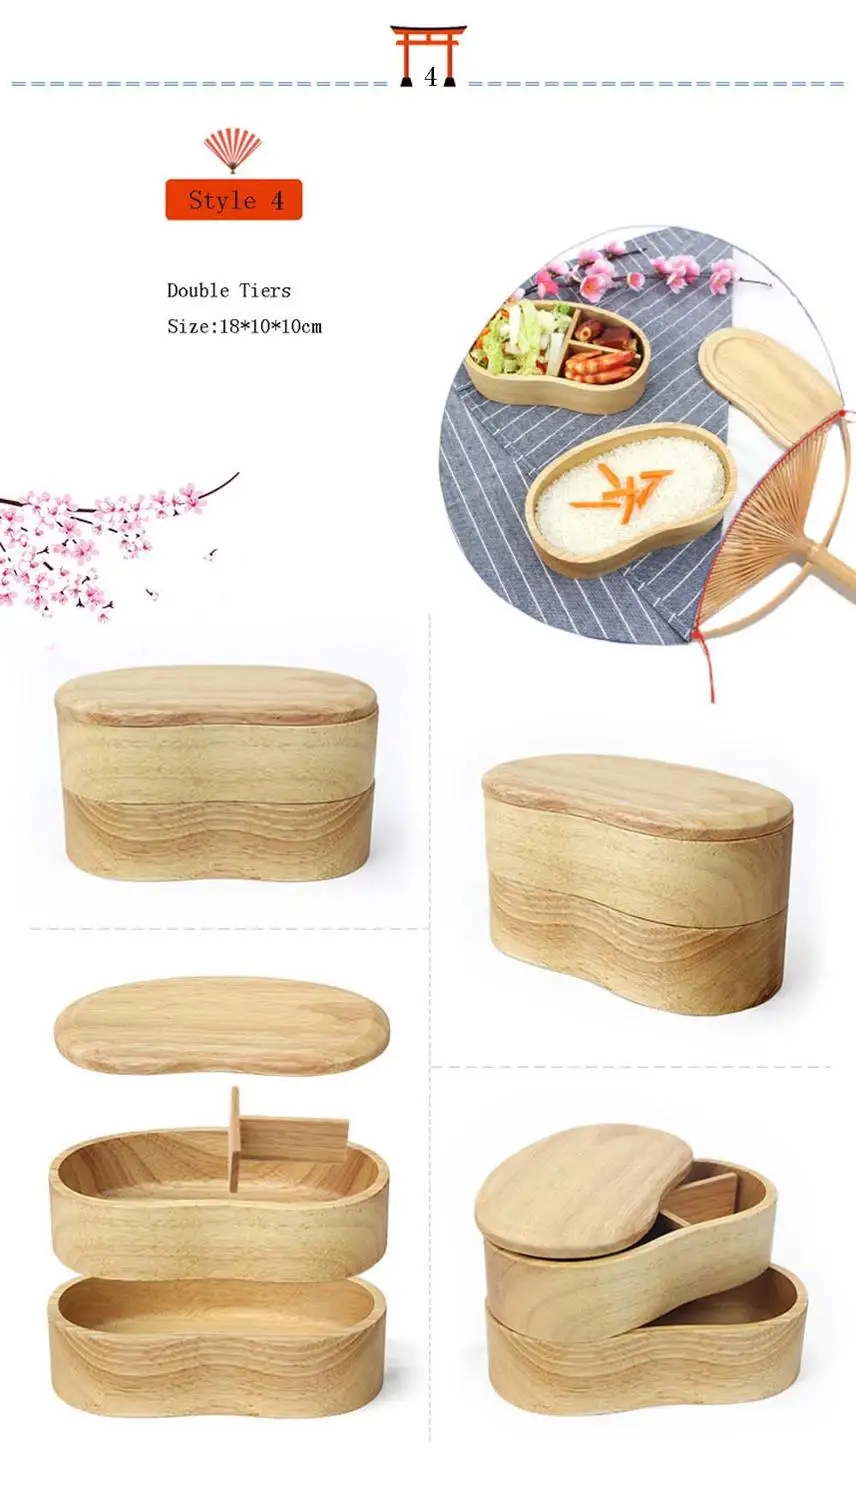 GODWJ посуда деревянный Ланч-бокс японский стиль студенческие контейнеры для еды для детей Отсек Bento коробки кухонная посуда - Цвет: 4